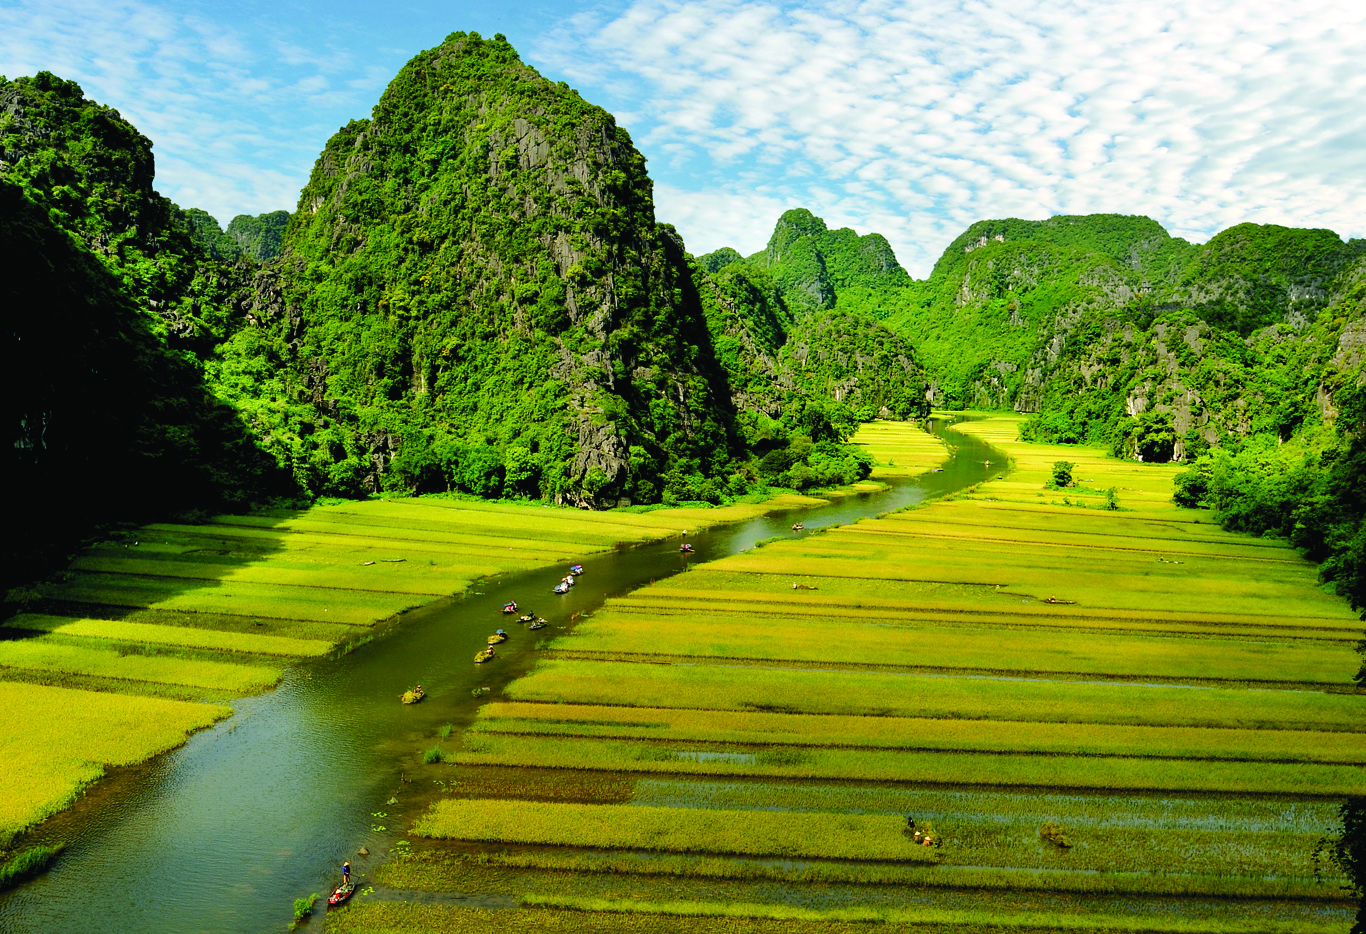 Ninh Binh développe son économie verte grâce aux ressources culturelles